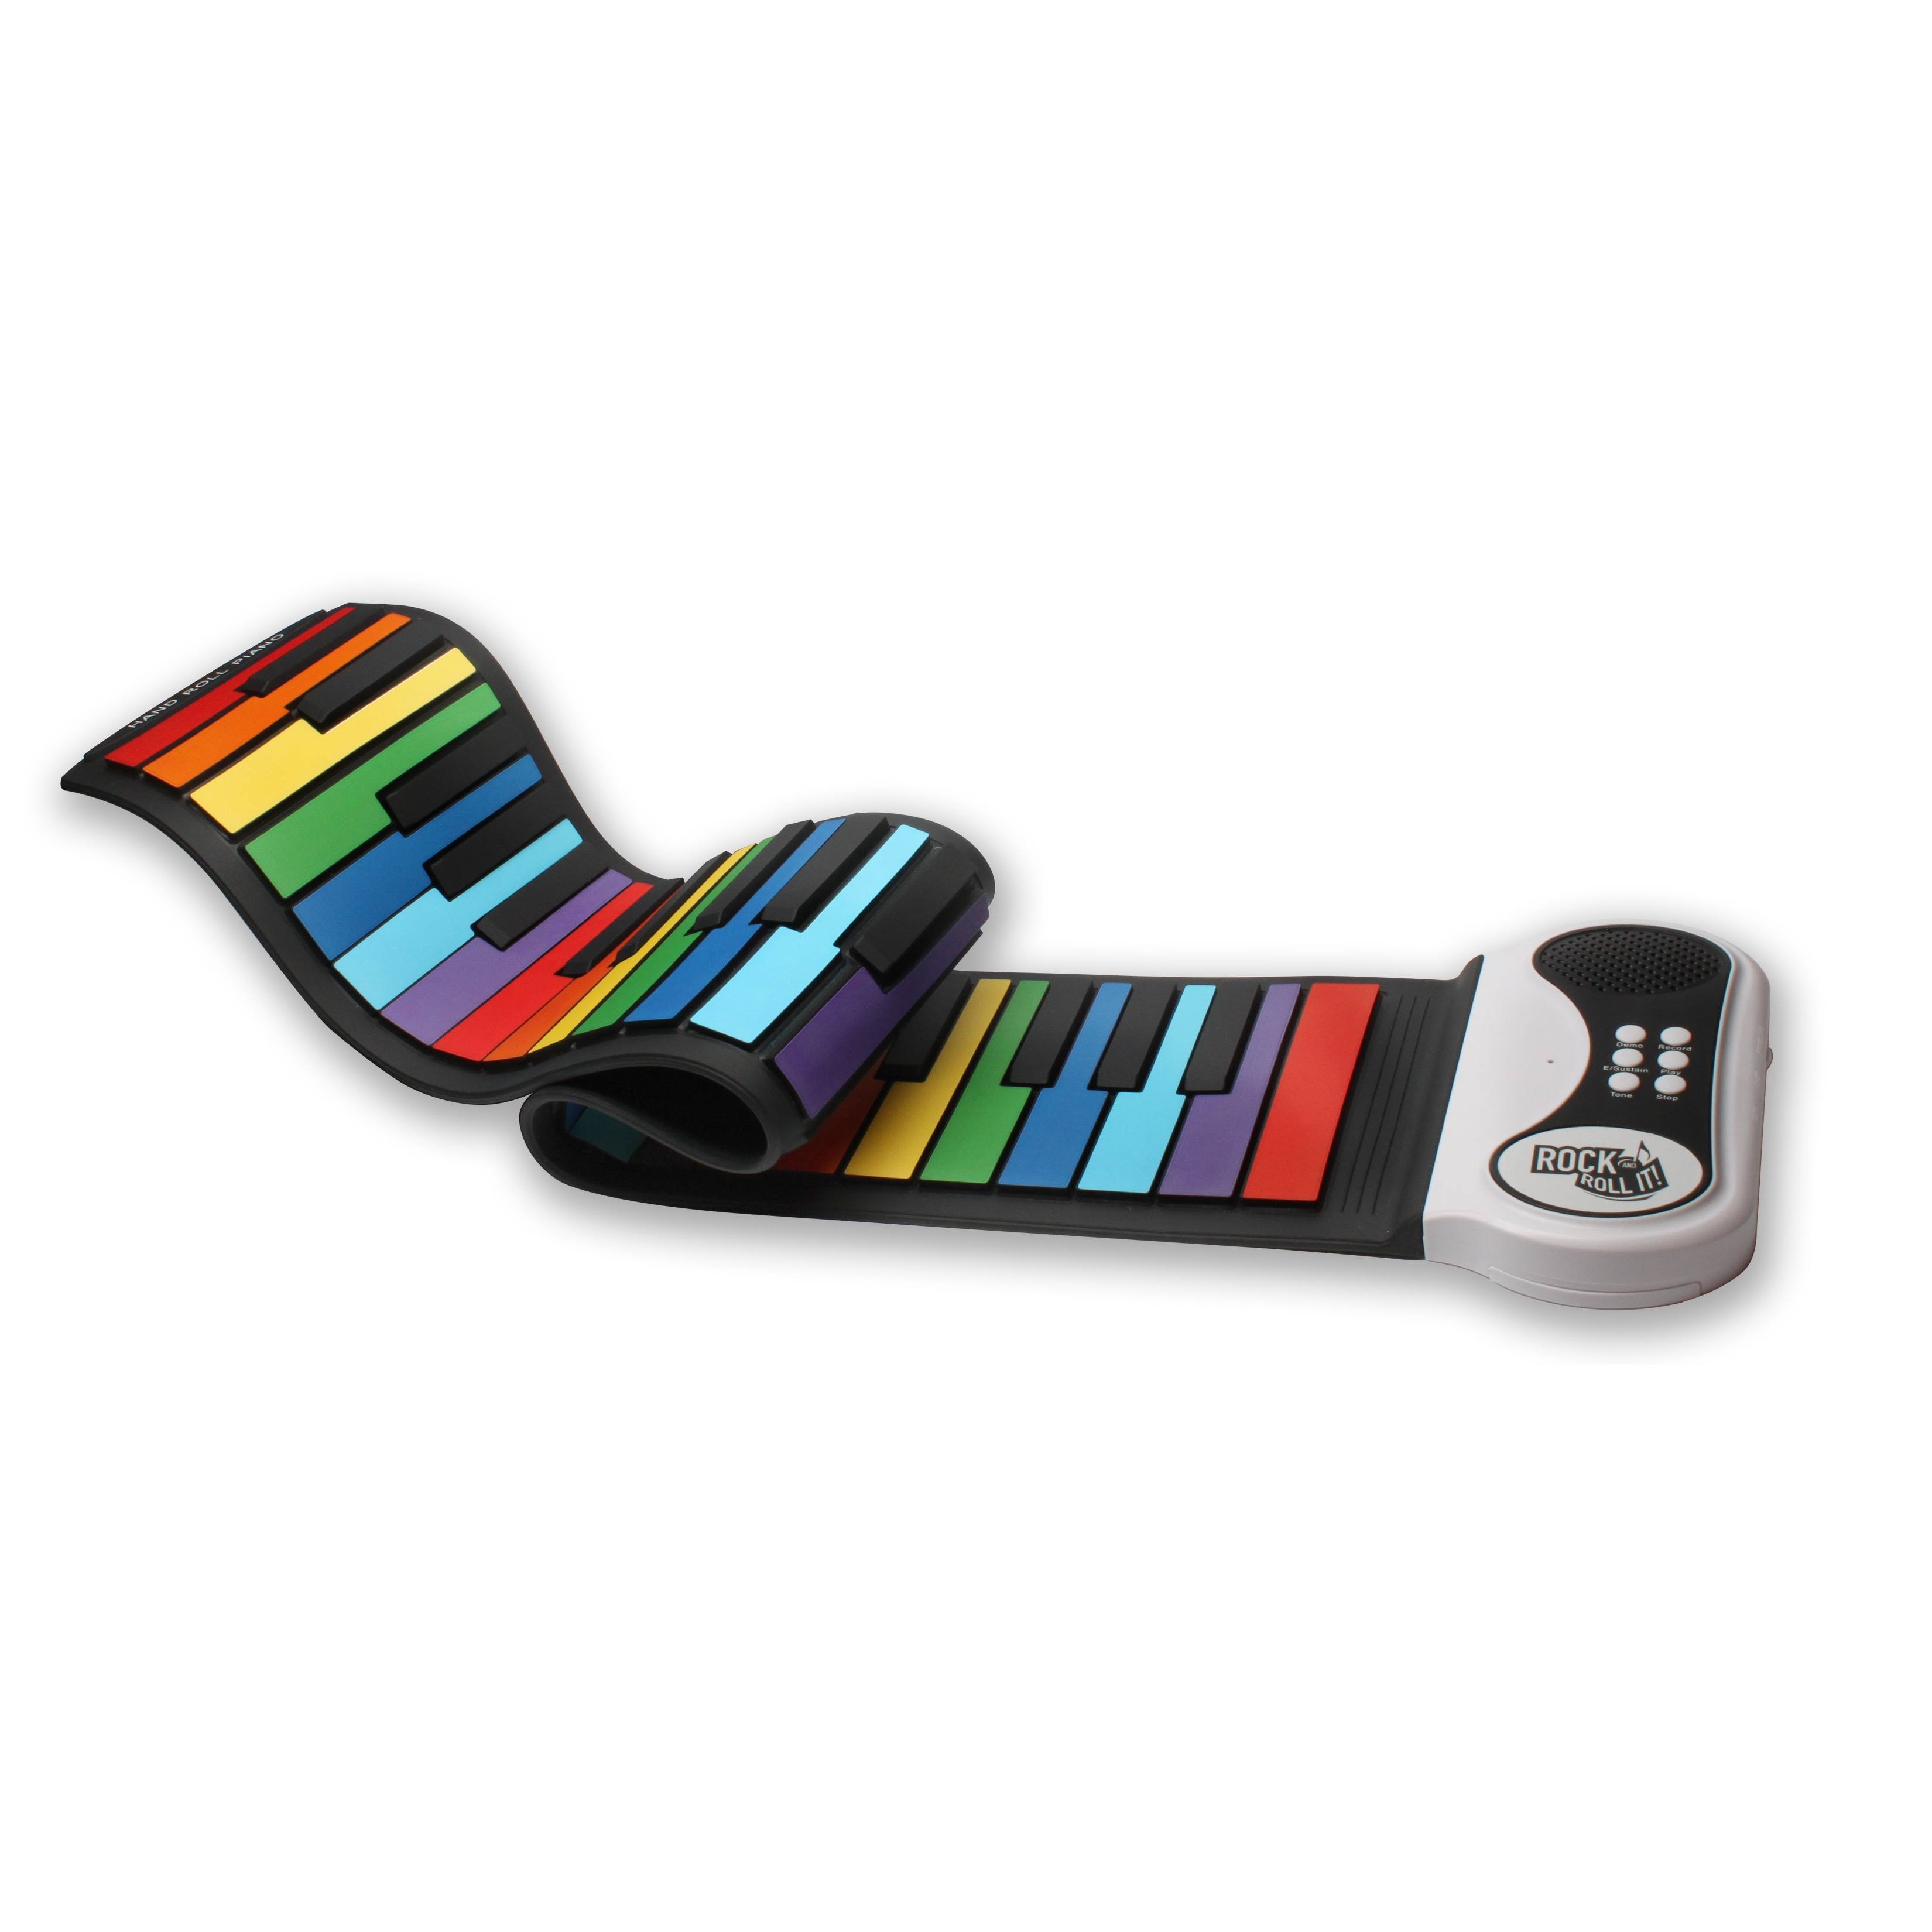 Mukikim Rock and Roll It Piano - Rainbow